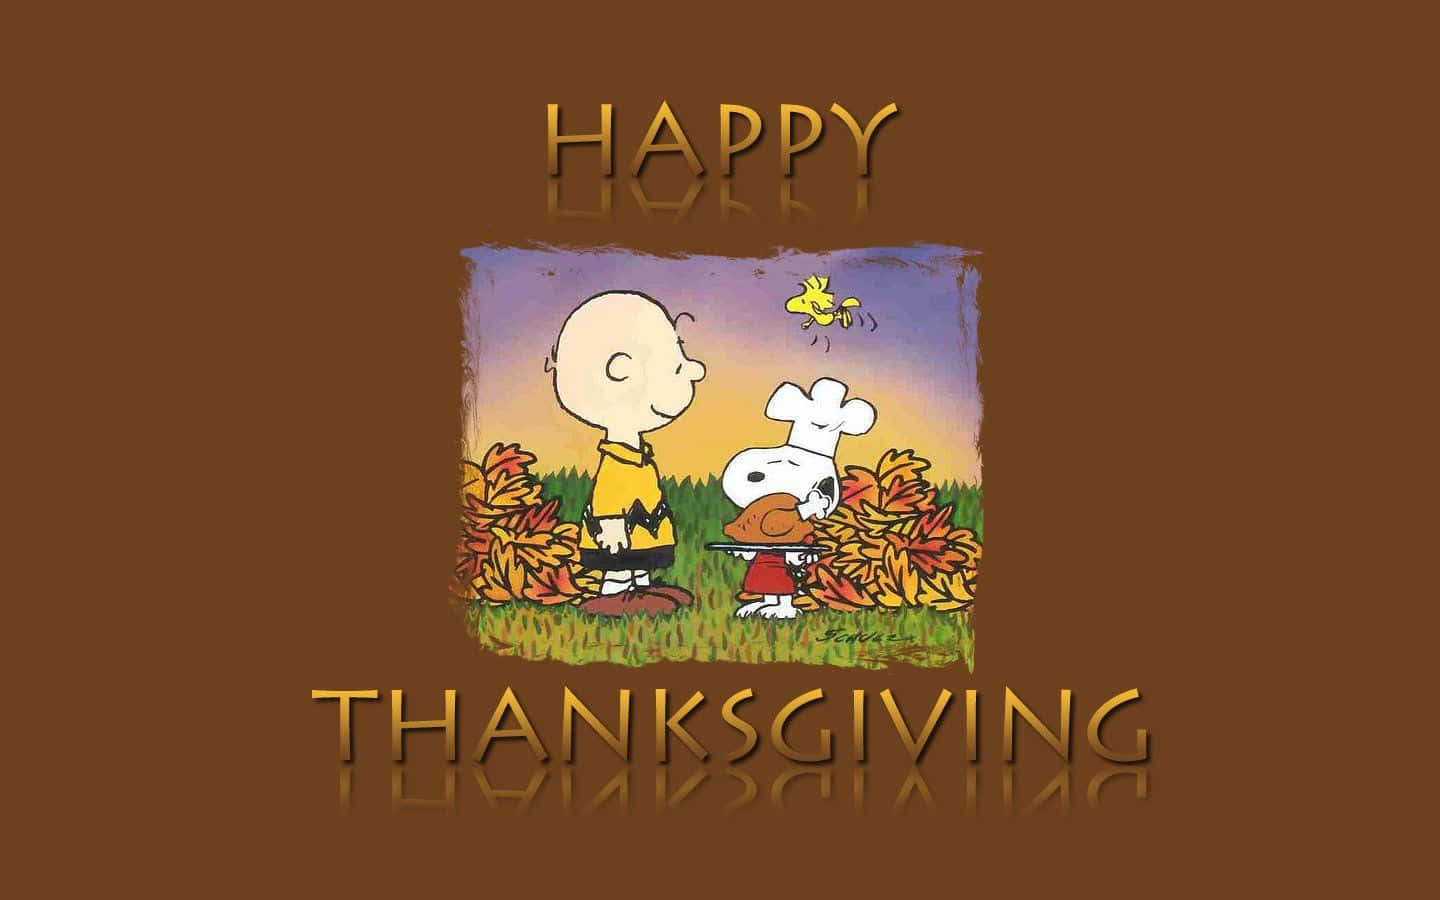 Tarjetade Felicitación De Snoopy Y Charlie Brown Feliz Día De Acción De Gracias Fondo de pantalla